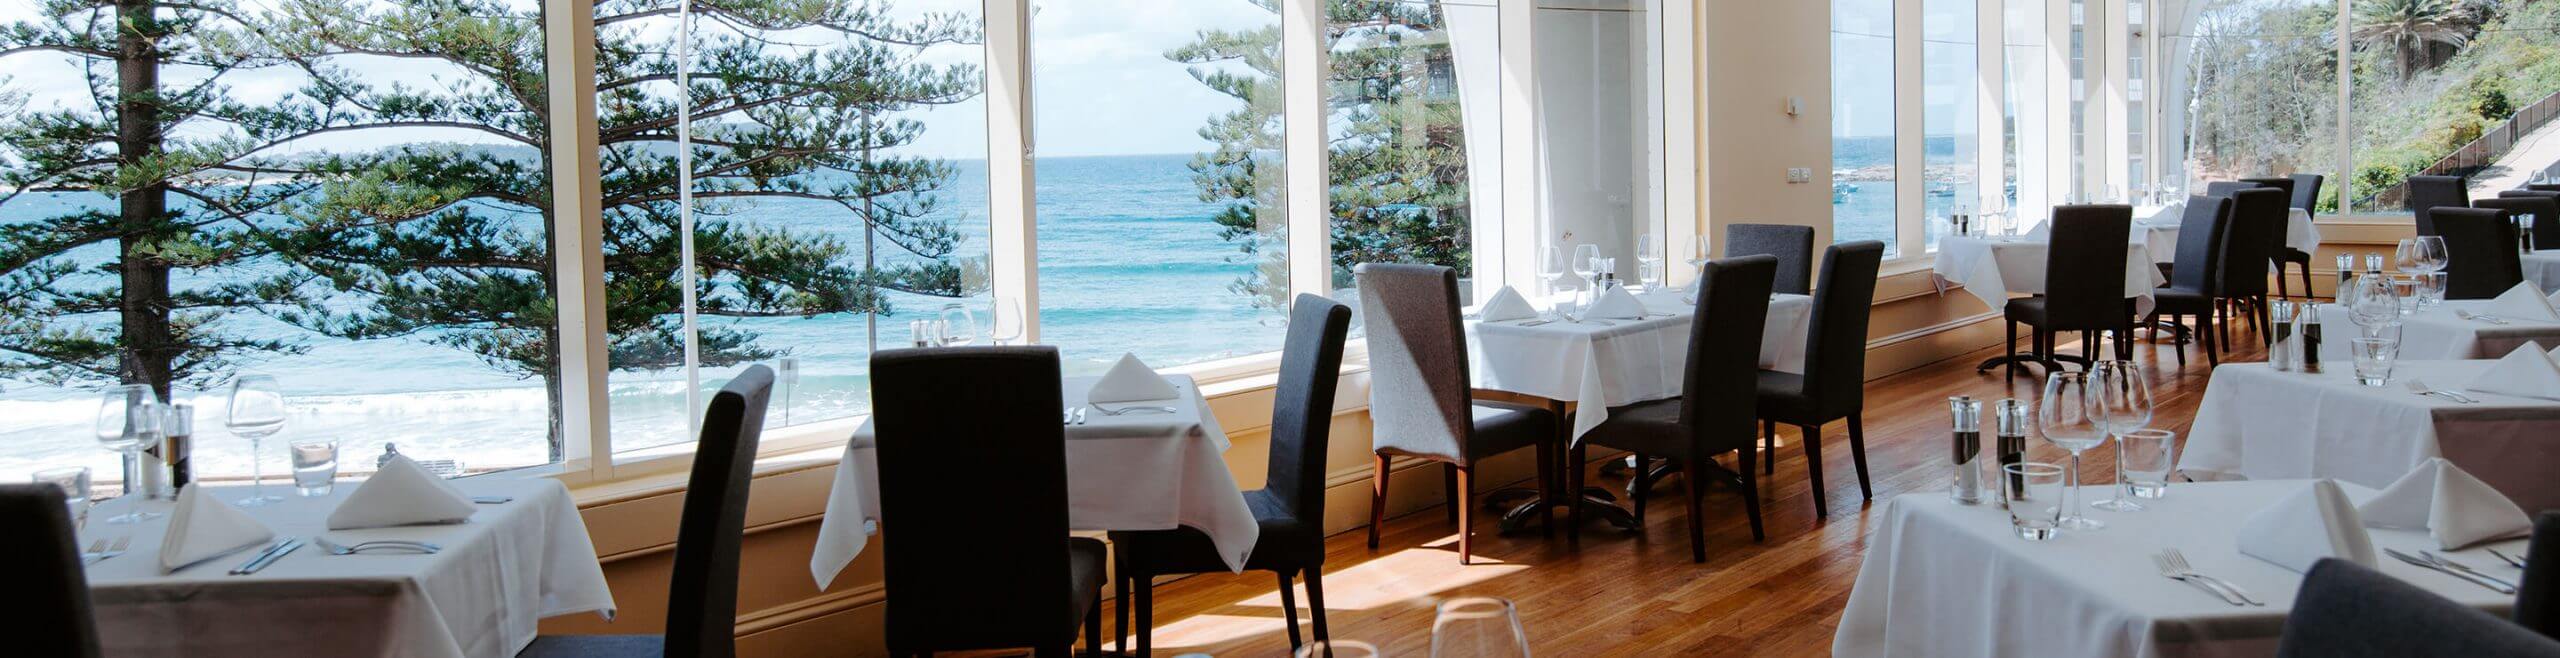 dining room overlooking ocean